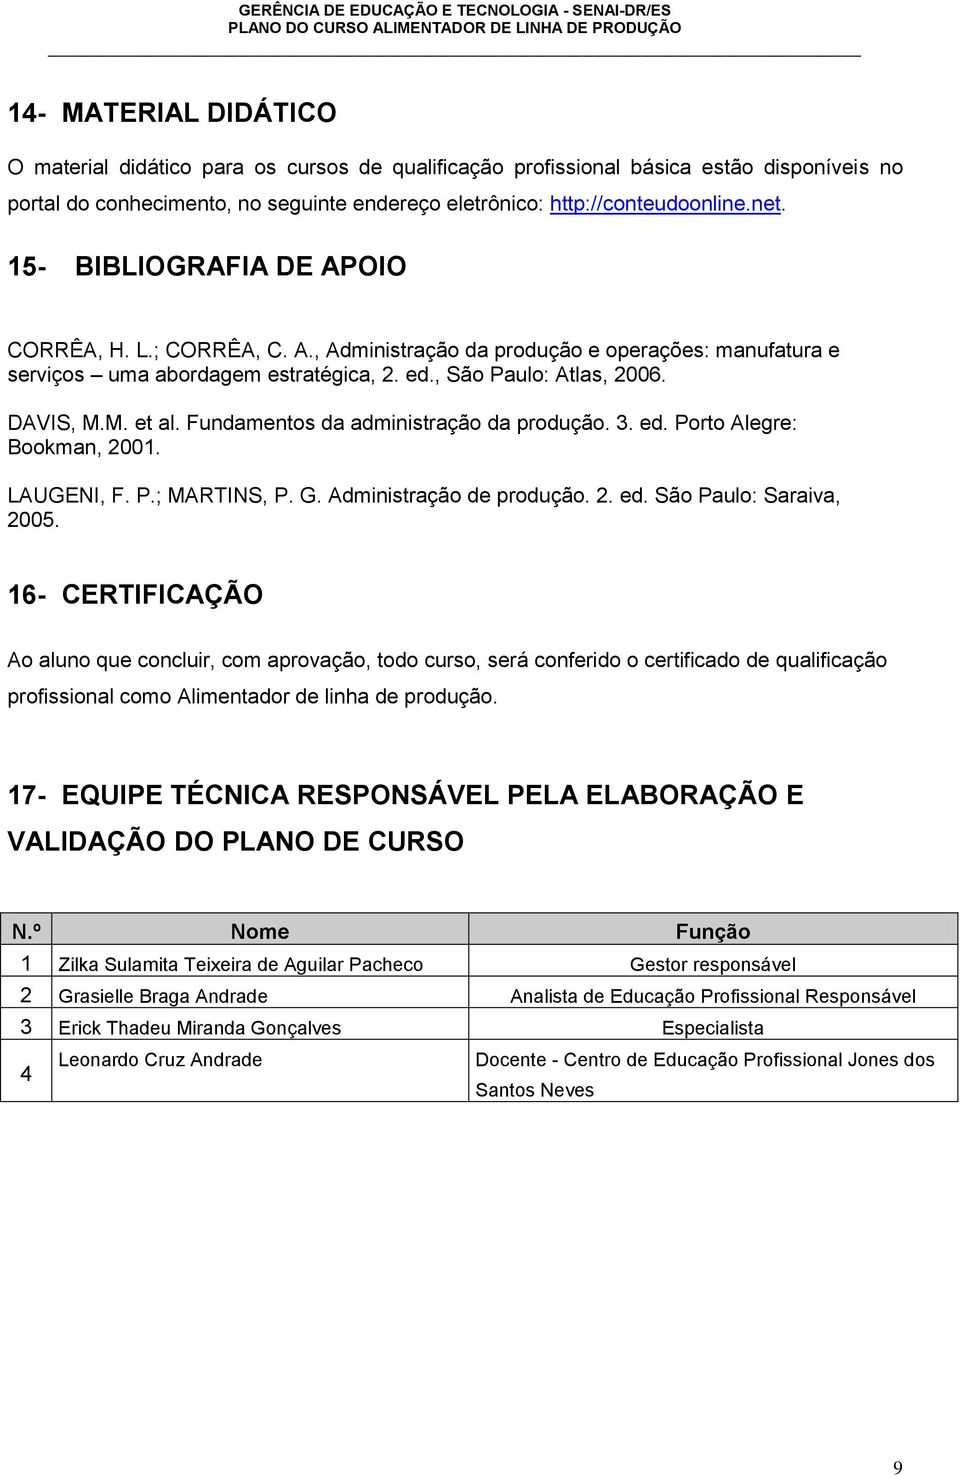 Fundamentos da administração da produção. 3. ed. Porto Alegre: Bookman, 2001. LAUGENI, F. P.; MARTINS, P. G. Administração de produção. 2. ed. São Paulo: Saraiva, 2005.